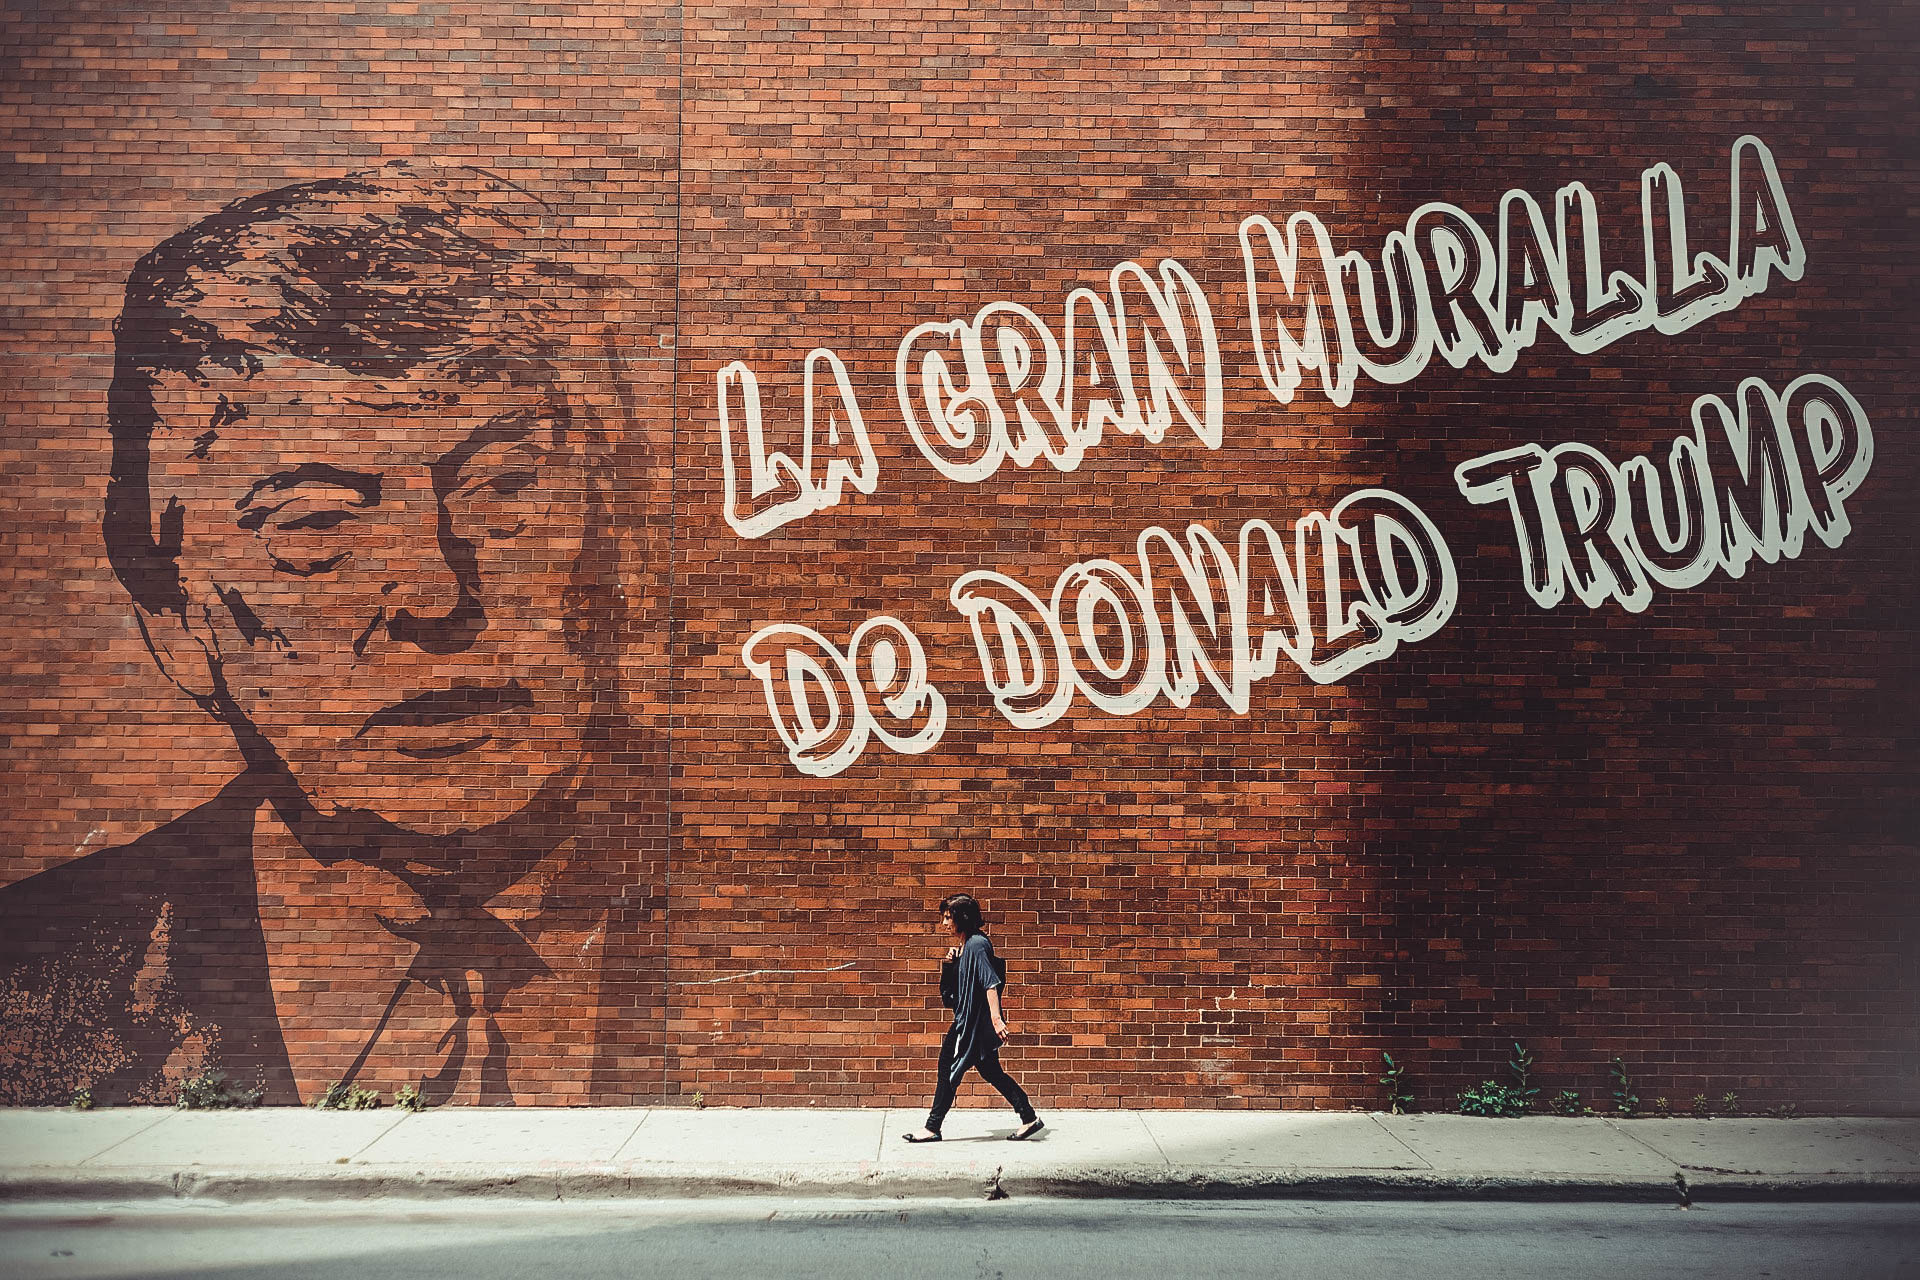 La Gran Muralla de Donald Trump: Causas, consecuencias y efectos